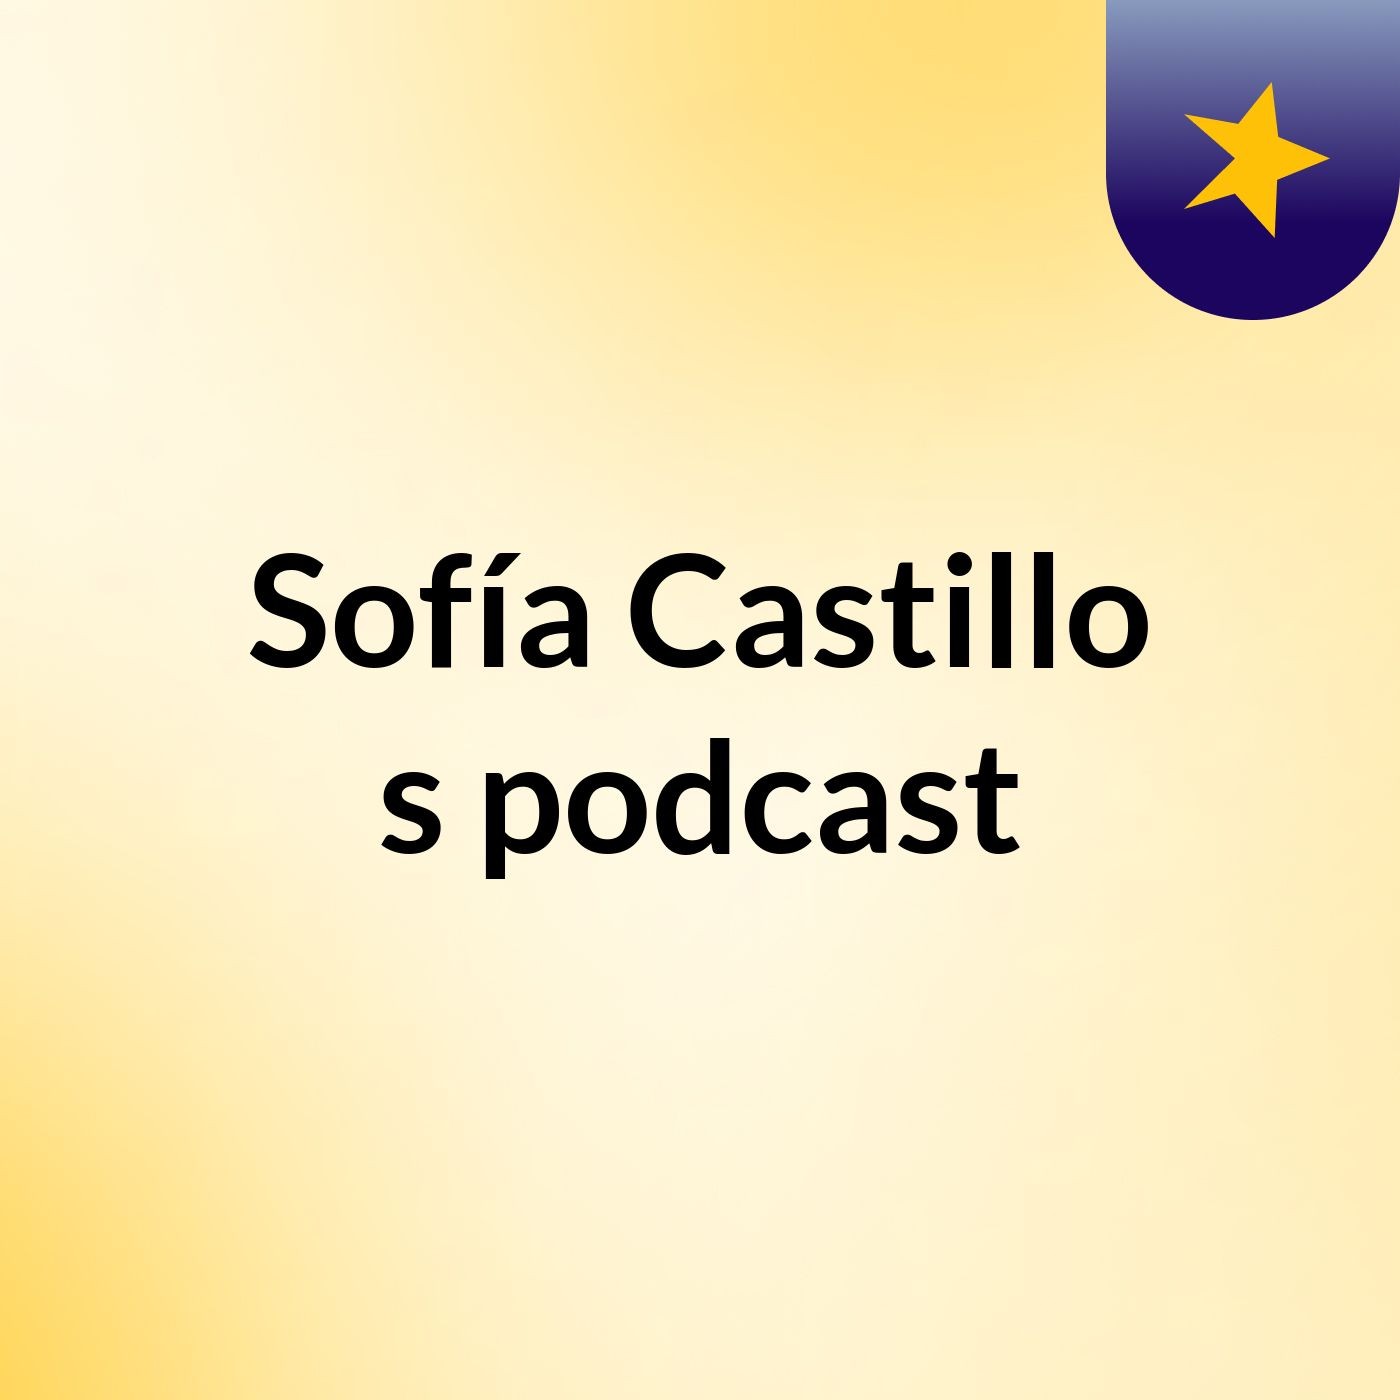 Sofía Castillo's podcast